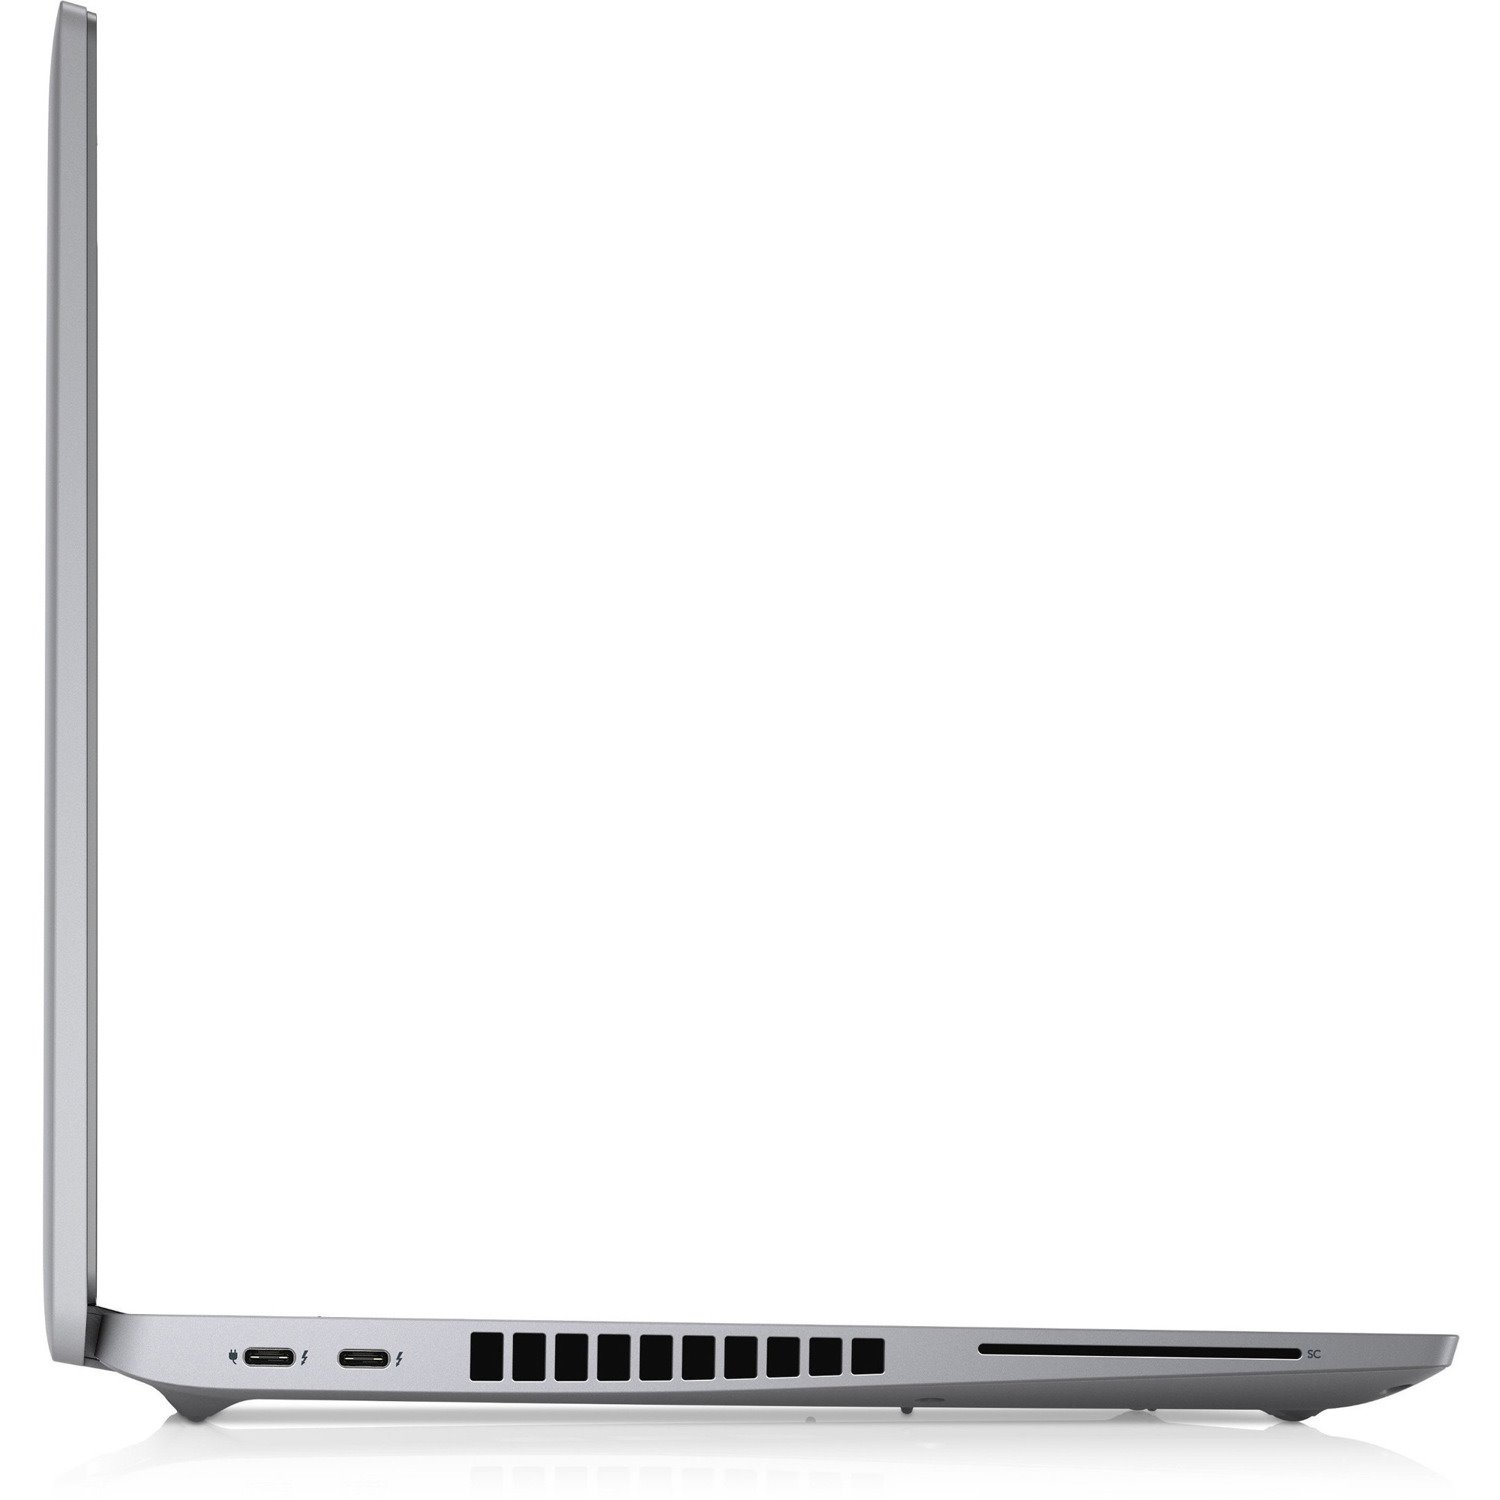 Dell Latitude 5000 5520 39.6 cm (15.6") Notebook - Full HD - 1920 x 1080 - Intel Core i5 11th Gen i5-1135G7 Quad-core (4 Core) 2.40 GHz - 8 GB RAM - 256 GB SSD - Titan Gray